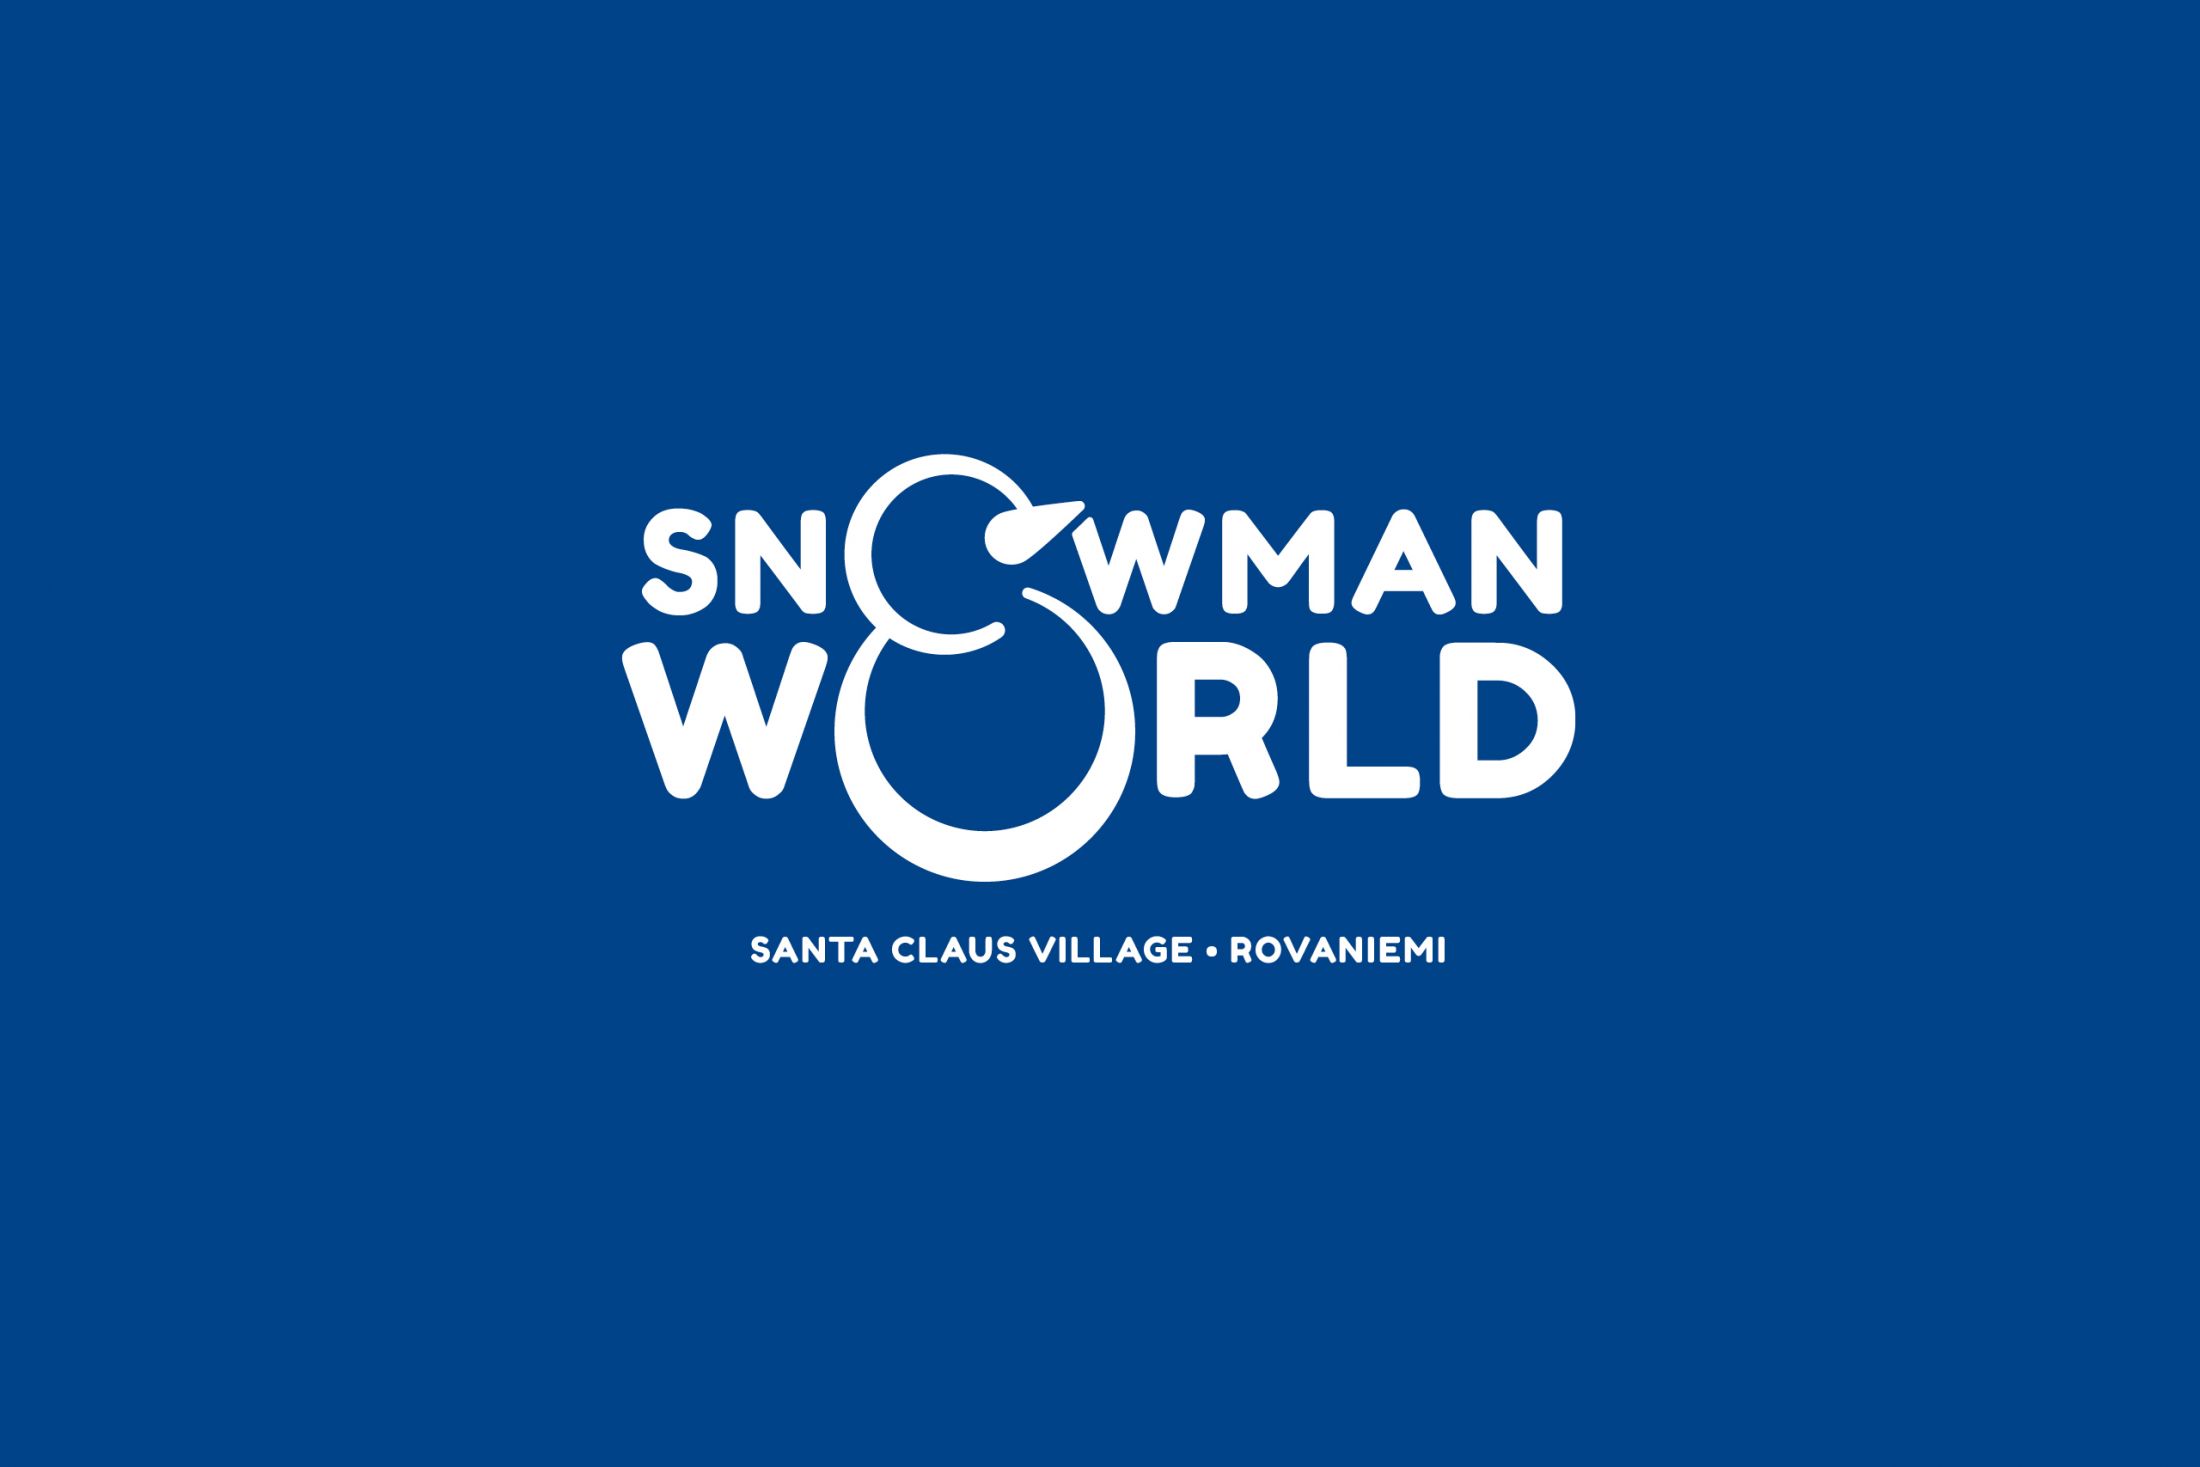 snowman_world_logo_vaaka.jpg